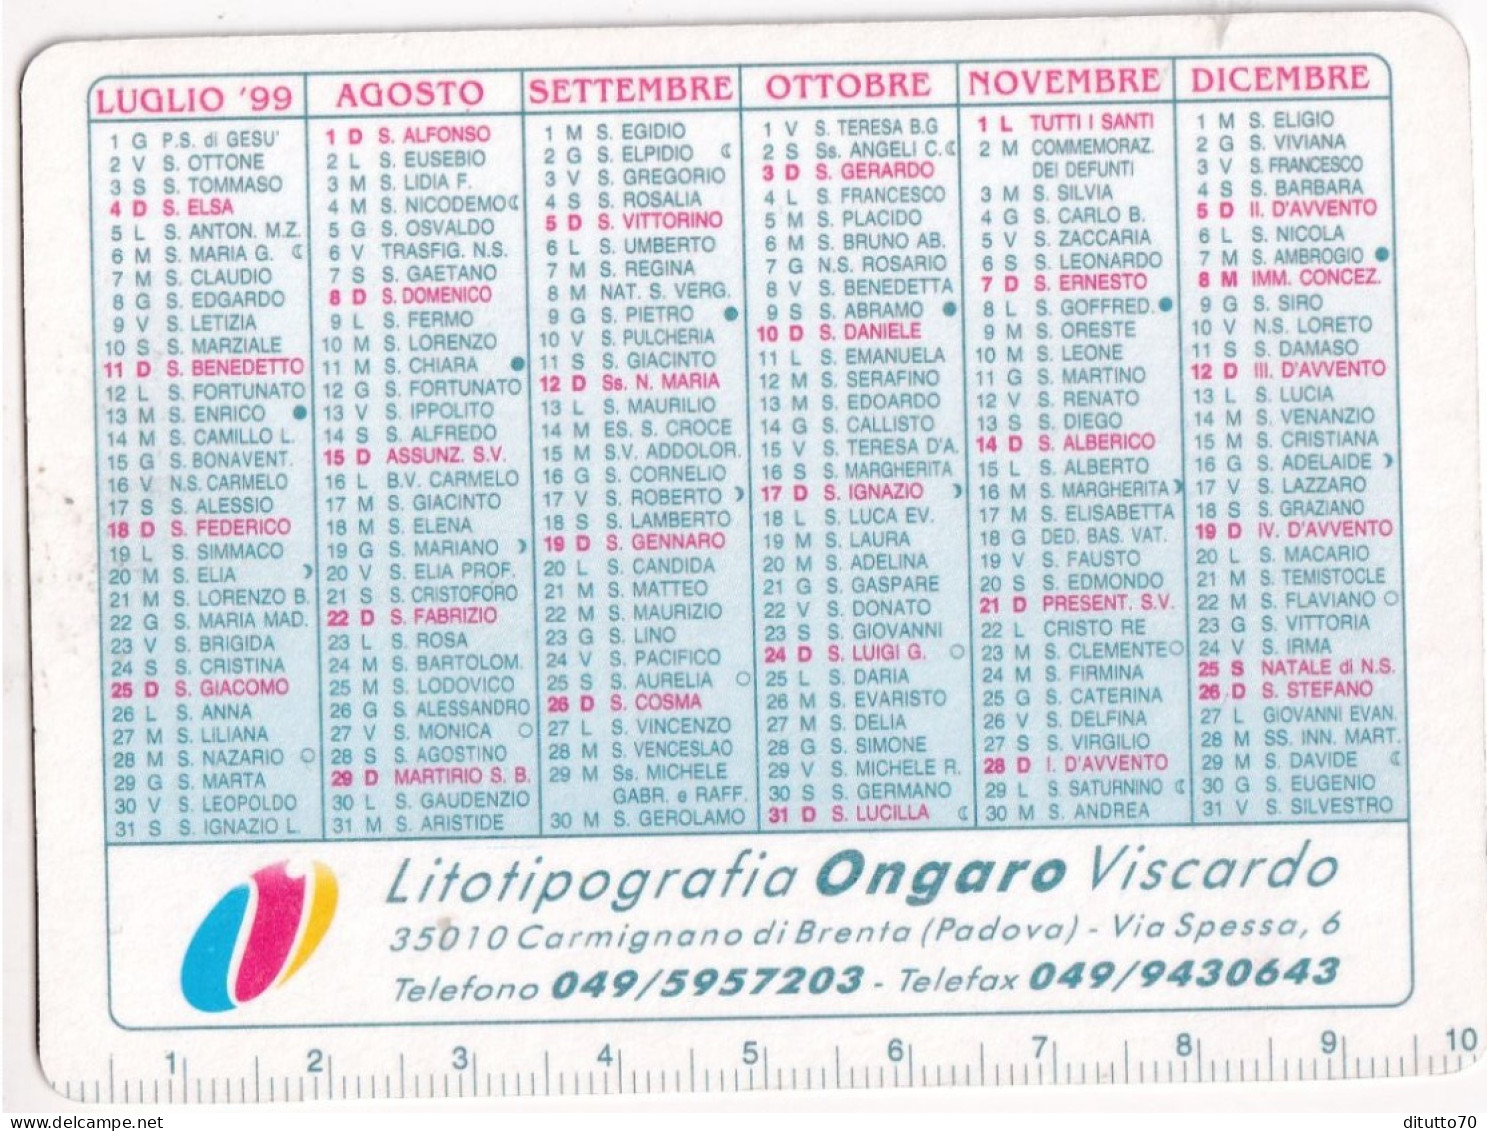 Calendarietto - Litotipografia Ongaro Viscardo - Carmignano Di Brenta - Padova - Anno 1999 - Small : 1991-00